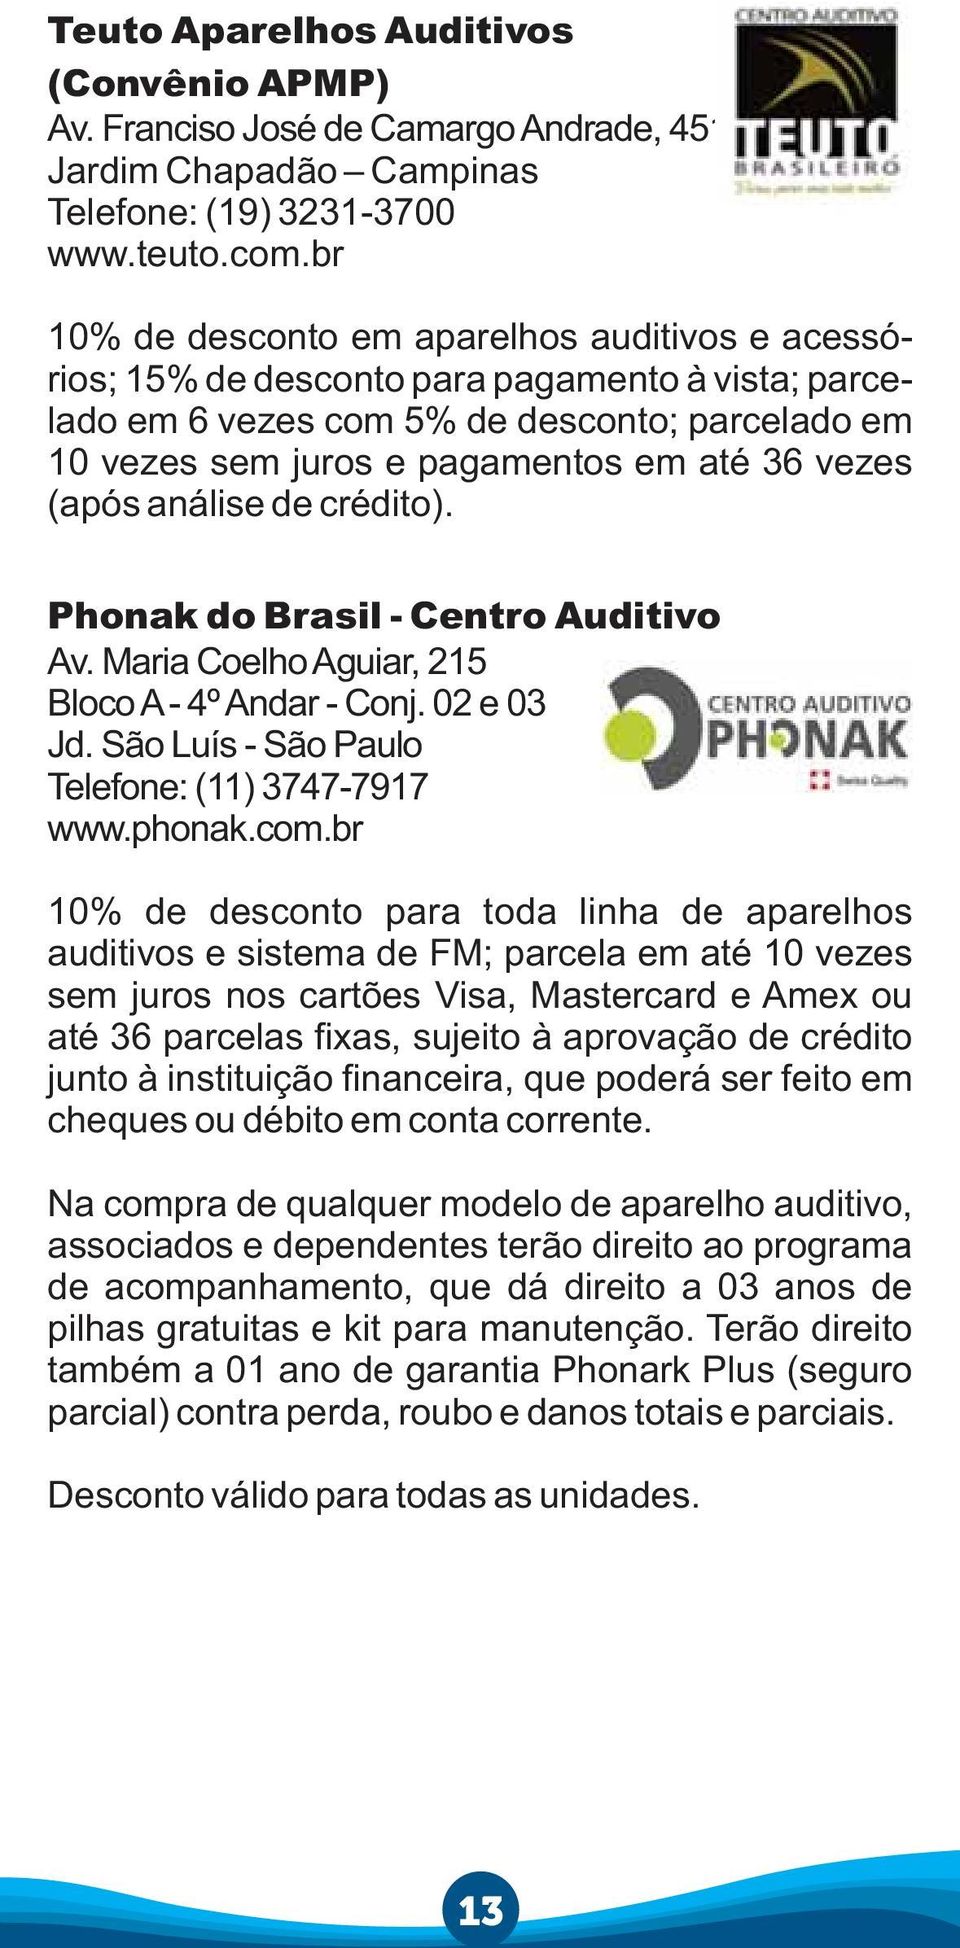 (após análise de crédito). Phonak do Brasil - Centro Auditivo Av. Maria Coelho Aguiar, 215 Bloco A - 4º Andar - Conj. 02 e 03 Jd. São Luís - São Paulo Telefone: (11) 3747-7917 www.phonak.com.